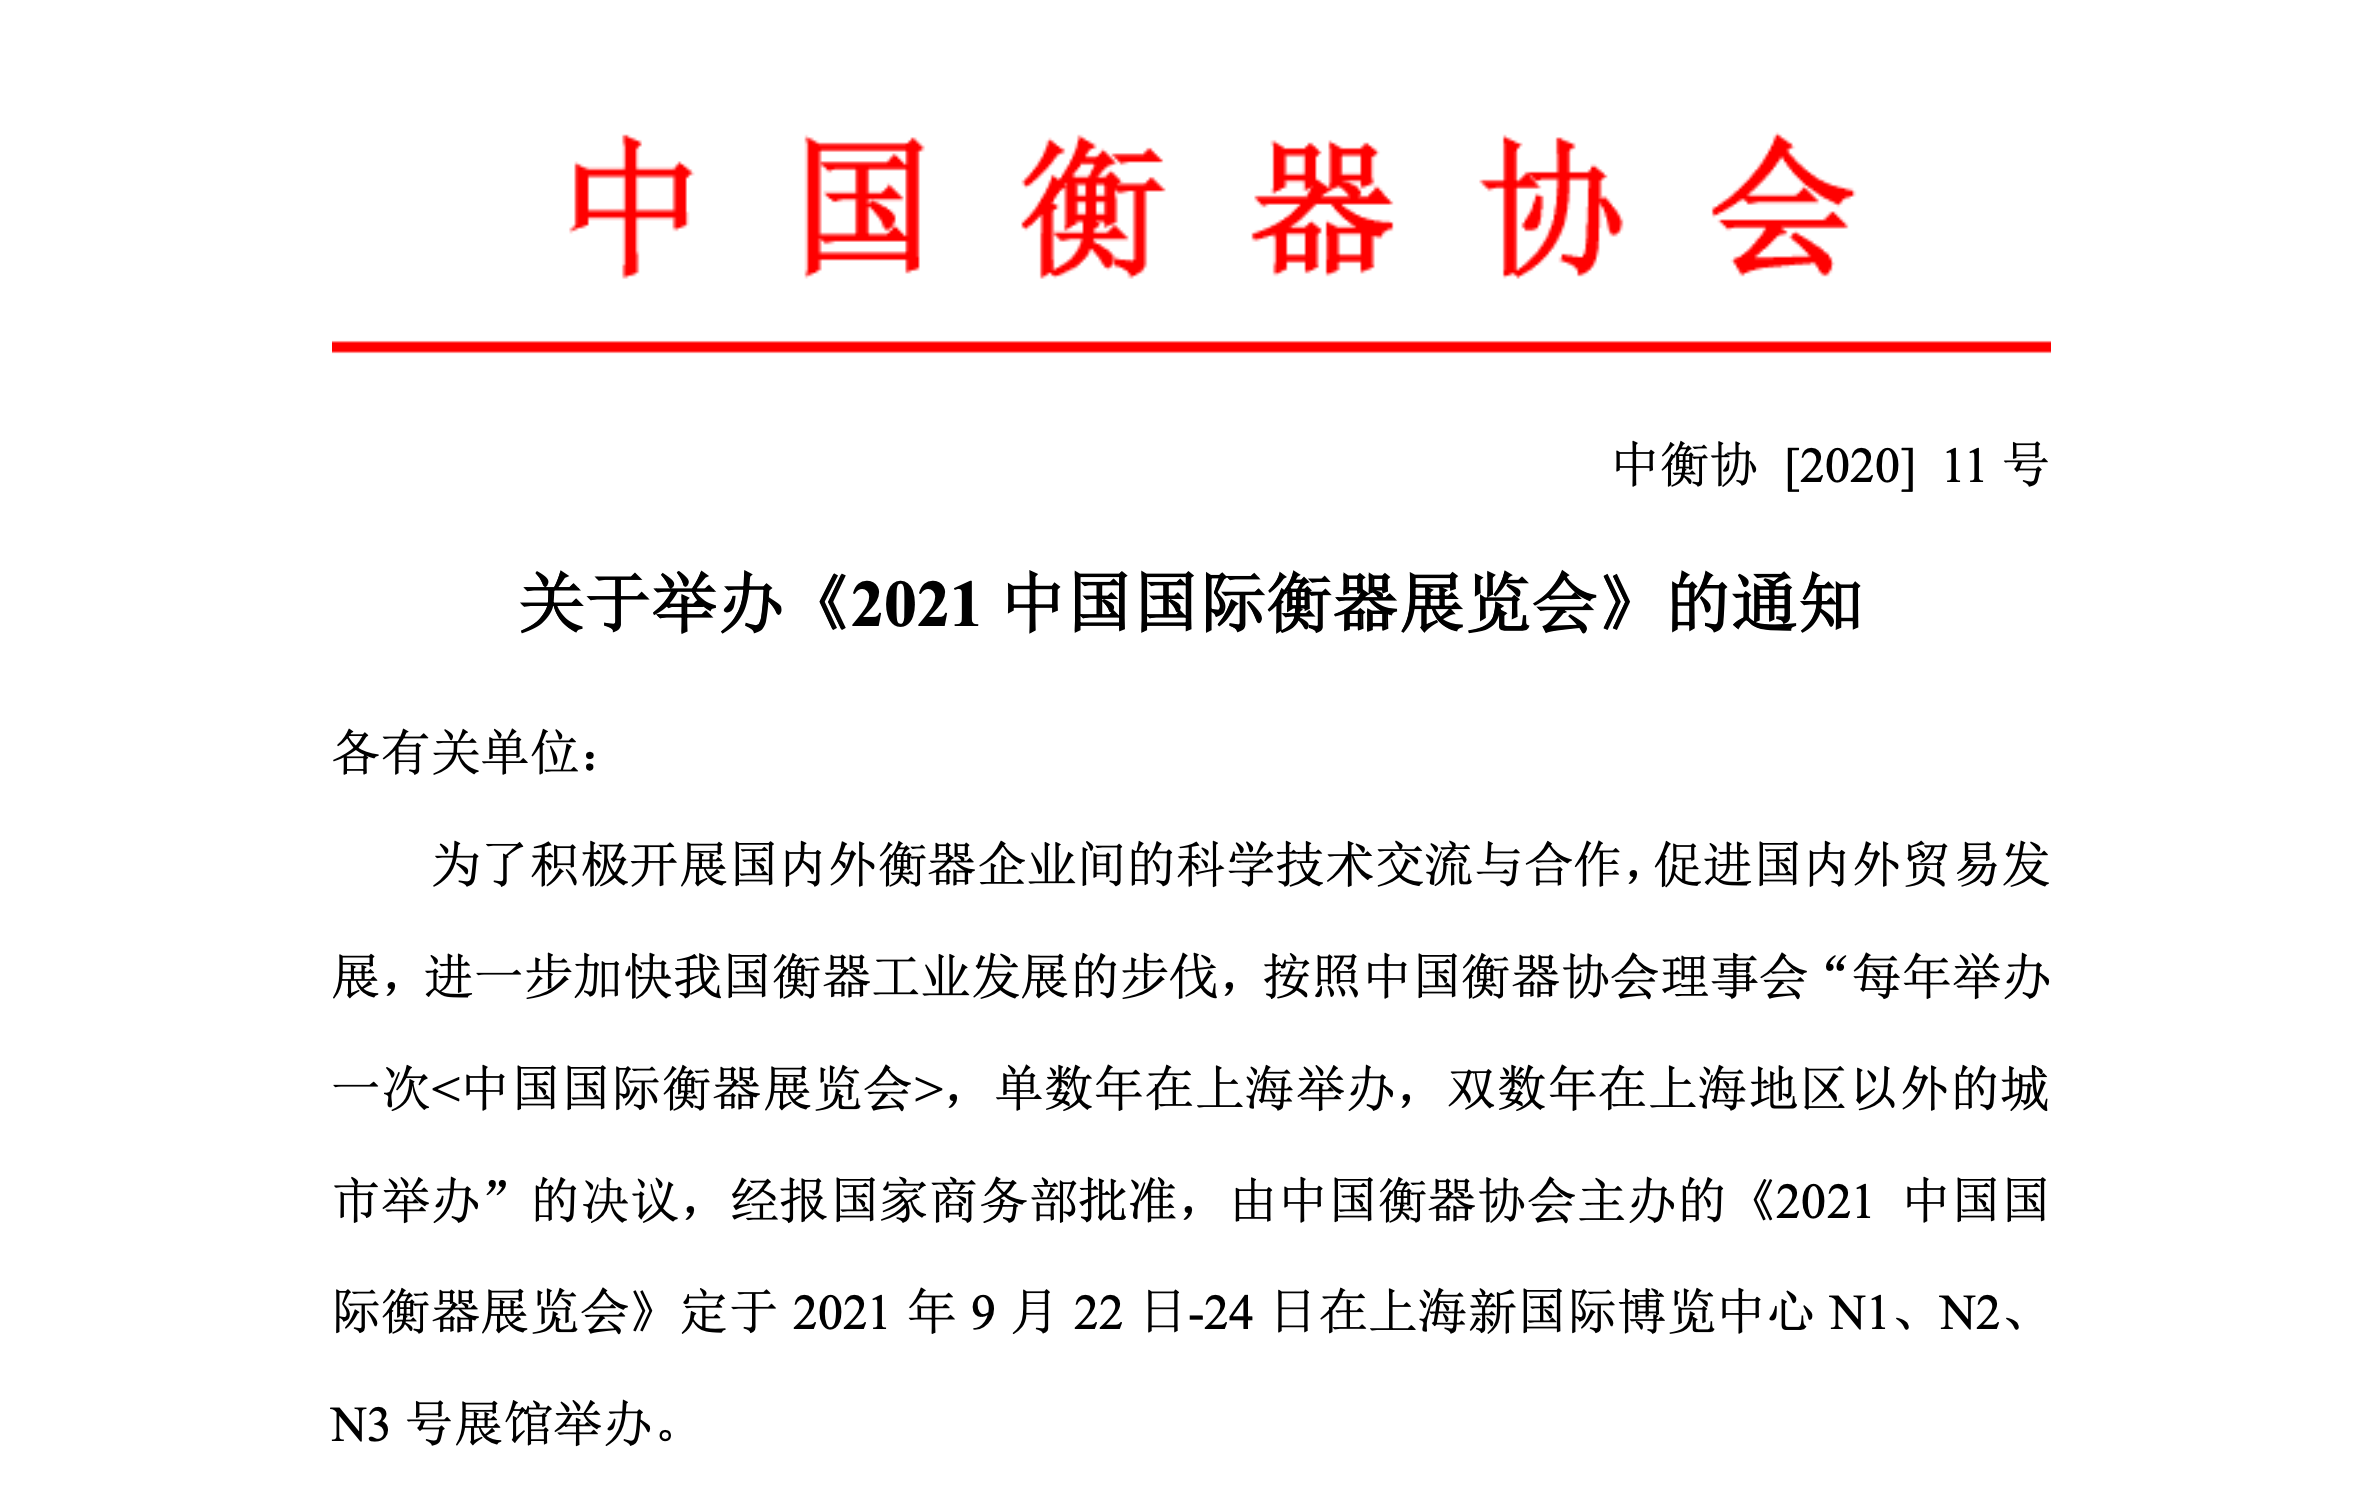   展会预告《2021中国国际衡器展览会》